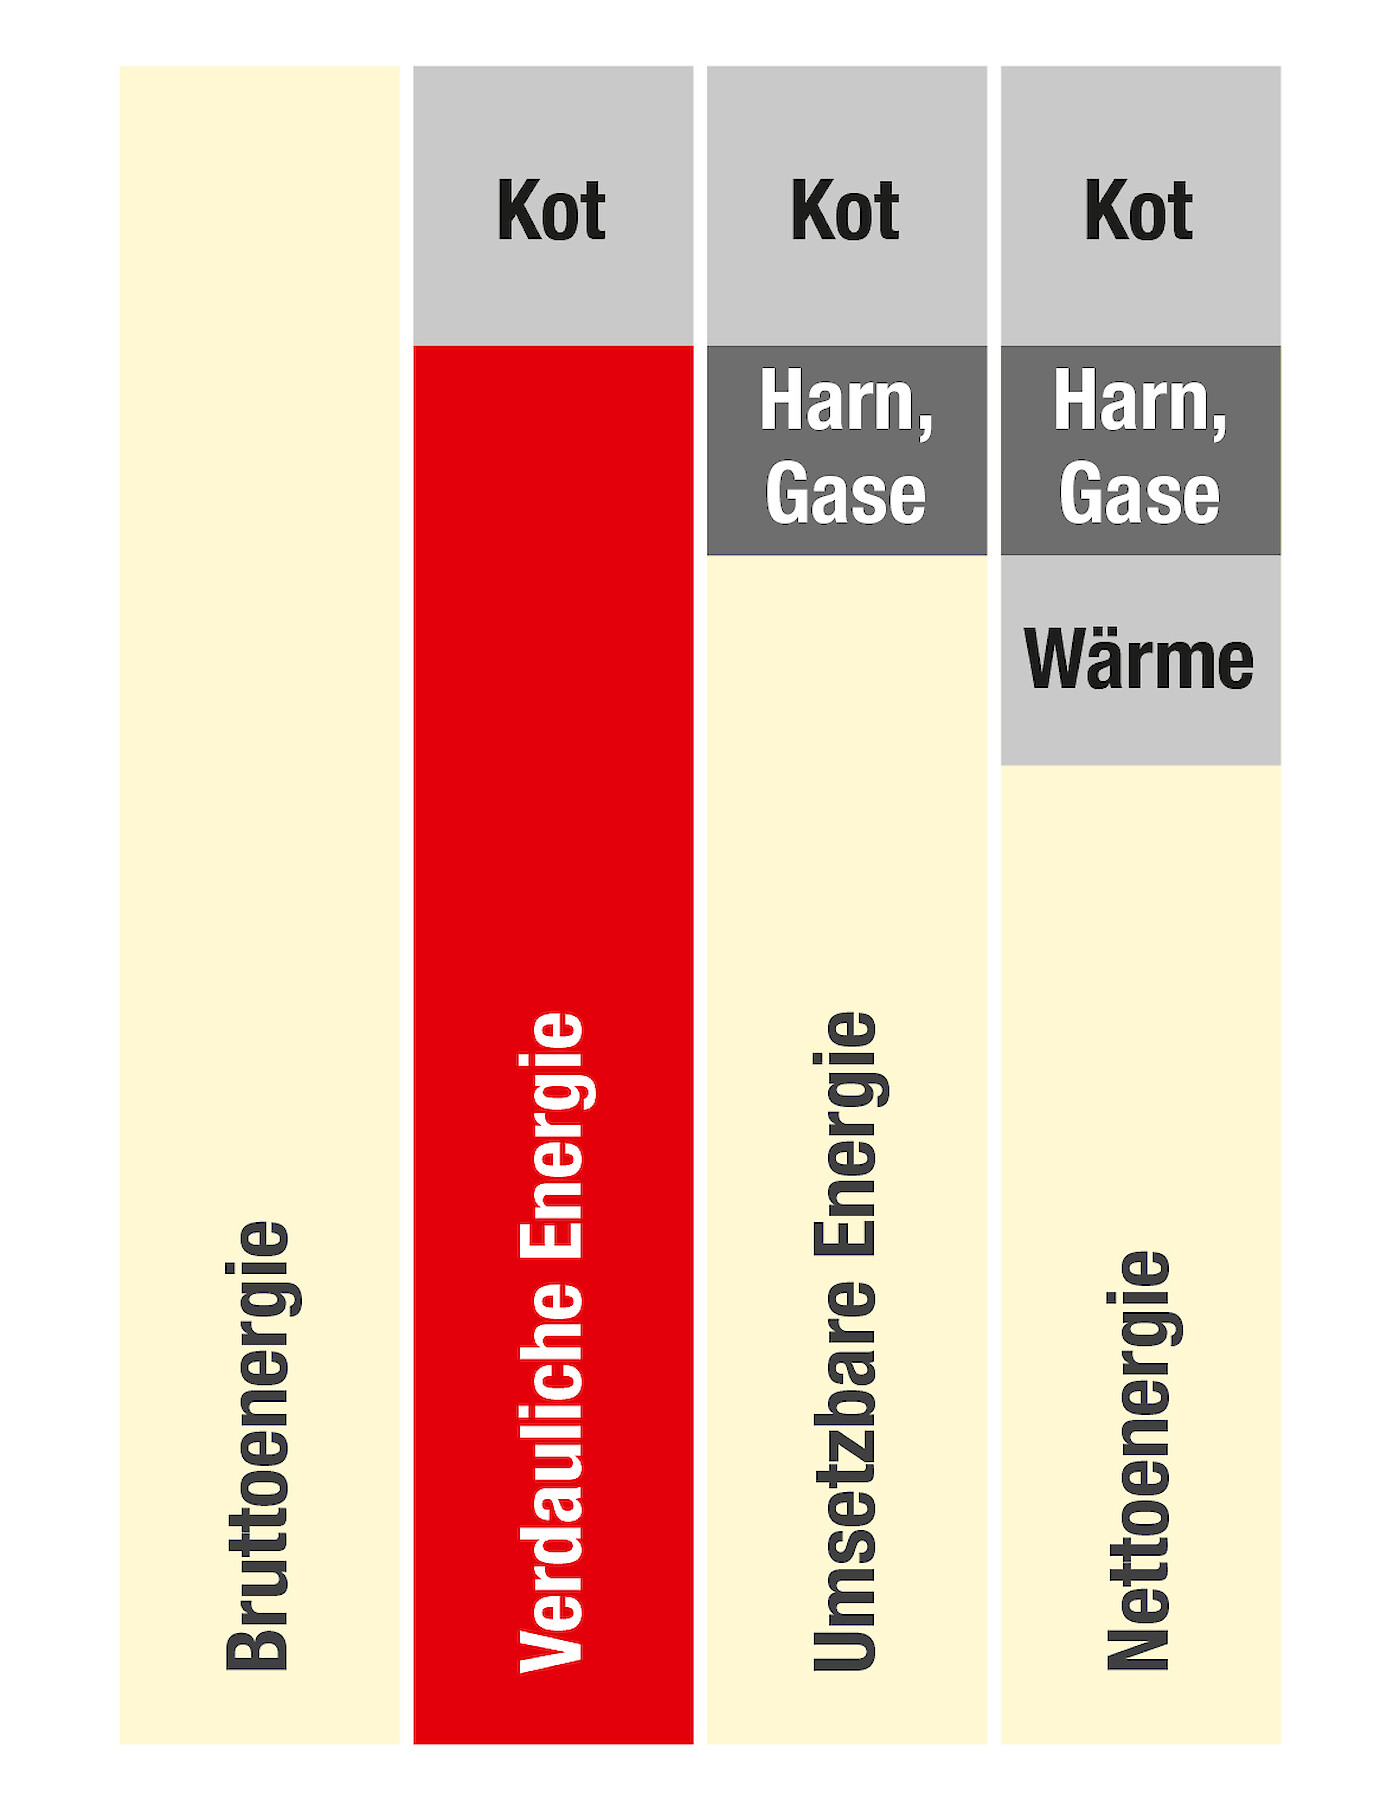 Grafische Darstellung verdauliche Energie im Vergleich zu anderen Energiebewertungssystemen in der Schweinemast (© Deutsche Tiernahrung Cremer).